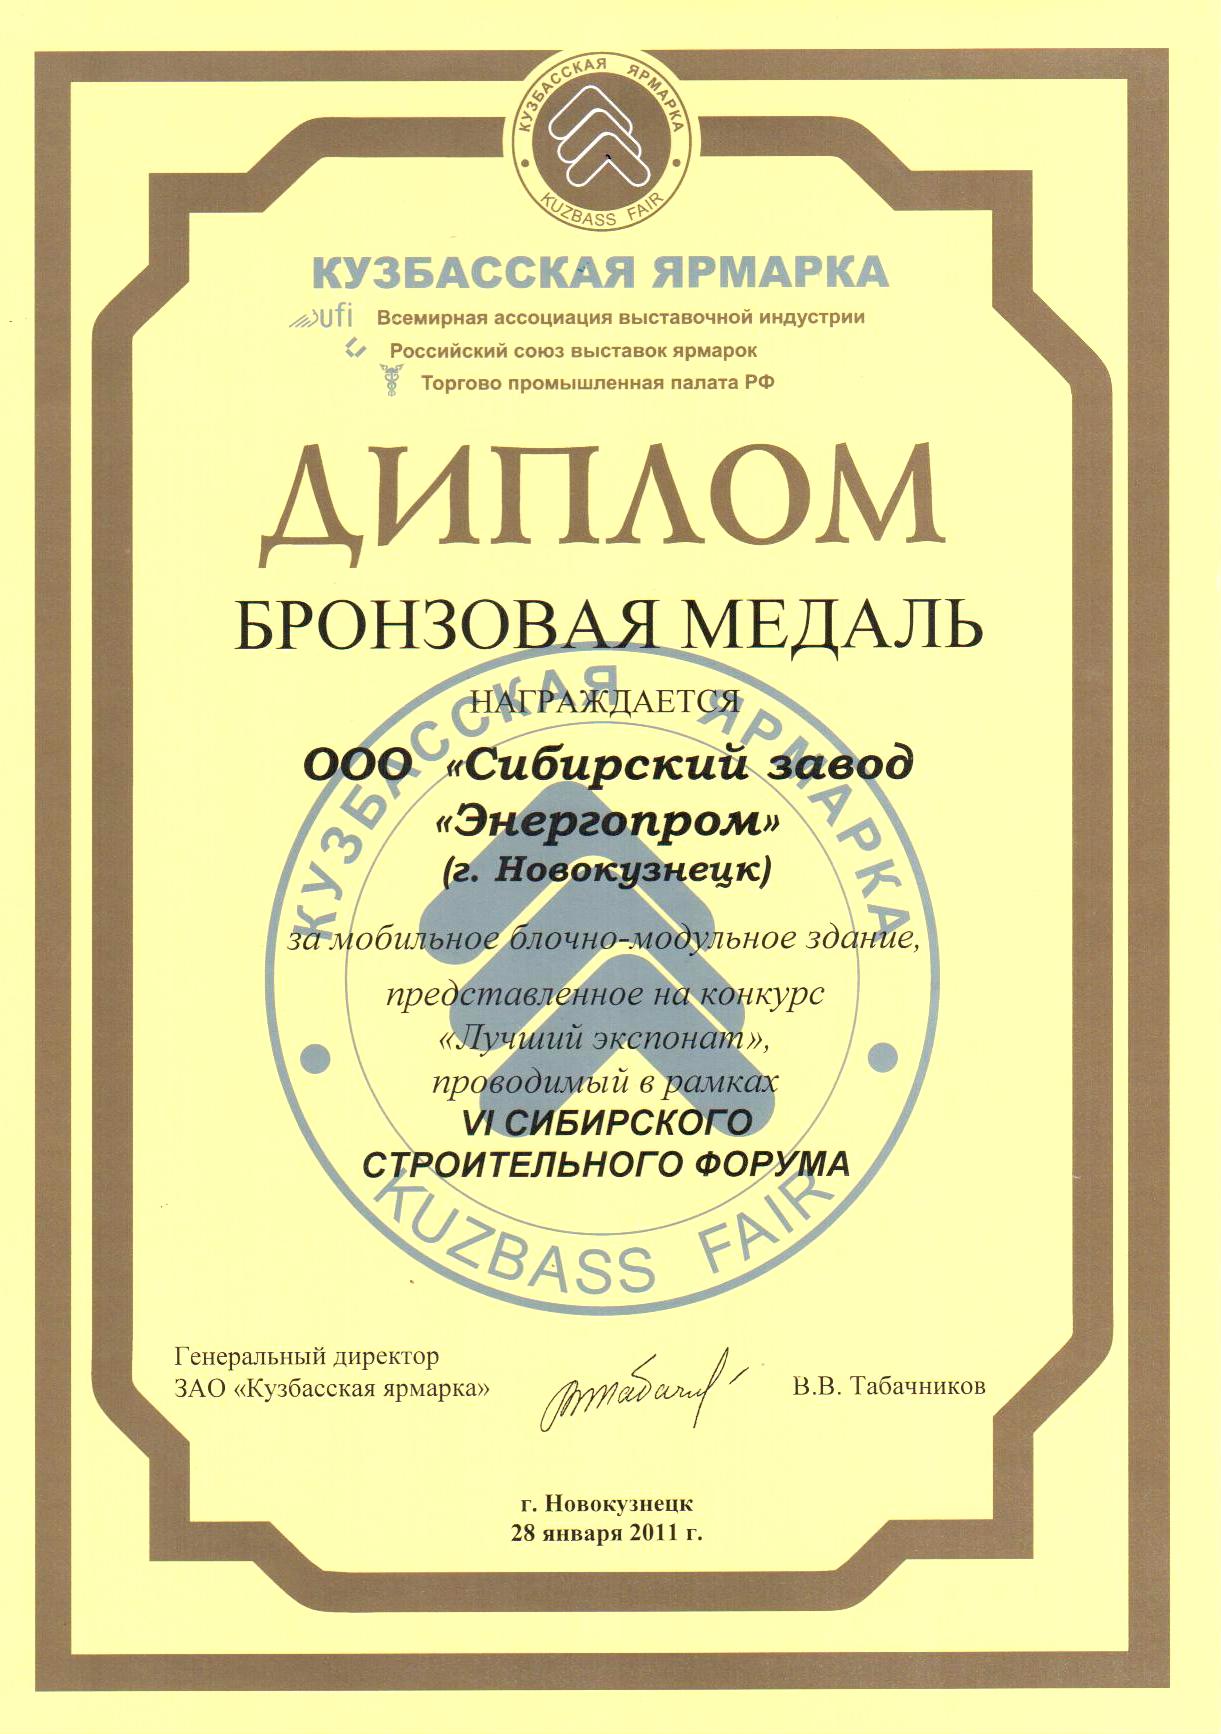 VI Сибирский строительный форум-2011.